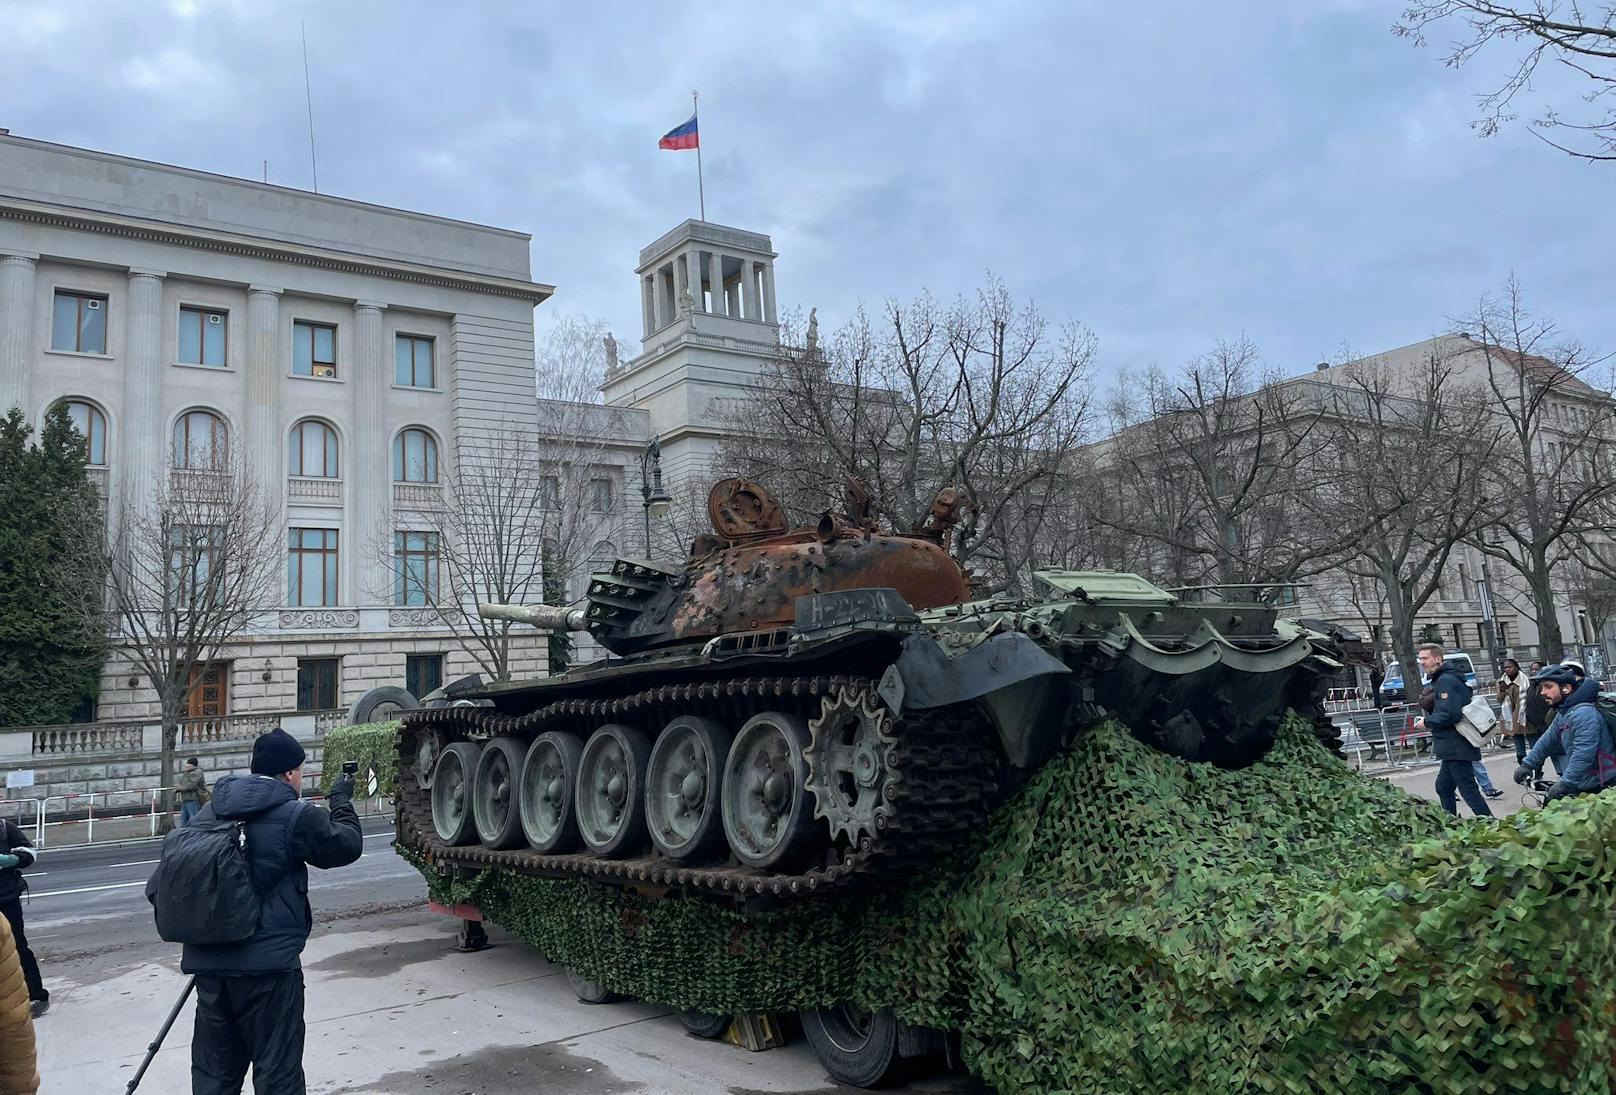 Eine andere Art des Protests: Zum Jahrestag des Ukraine-Kriegs wird ein zerstörter russischer Panzer vor der Botschaft in Berlin ausgestellt.